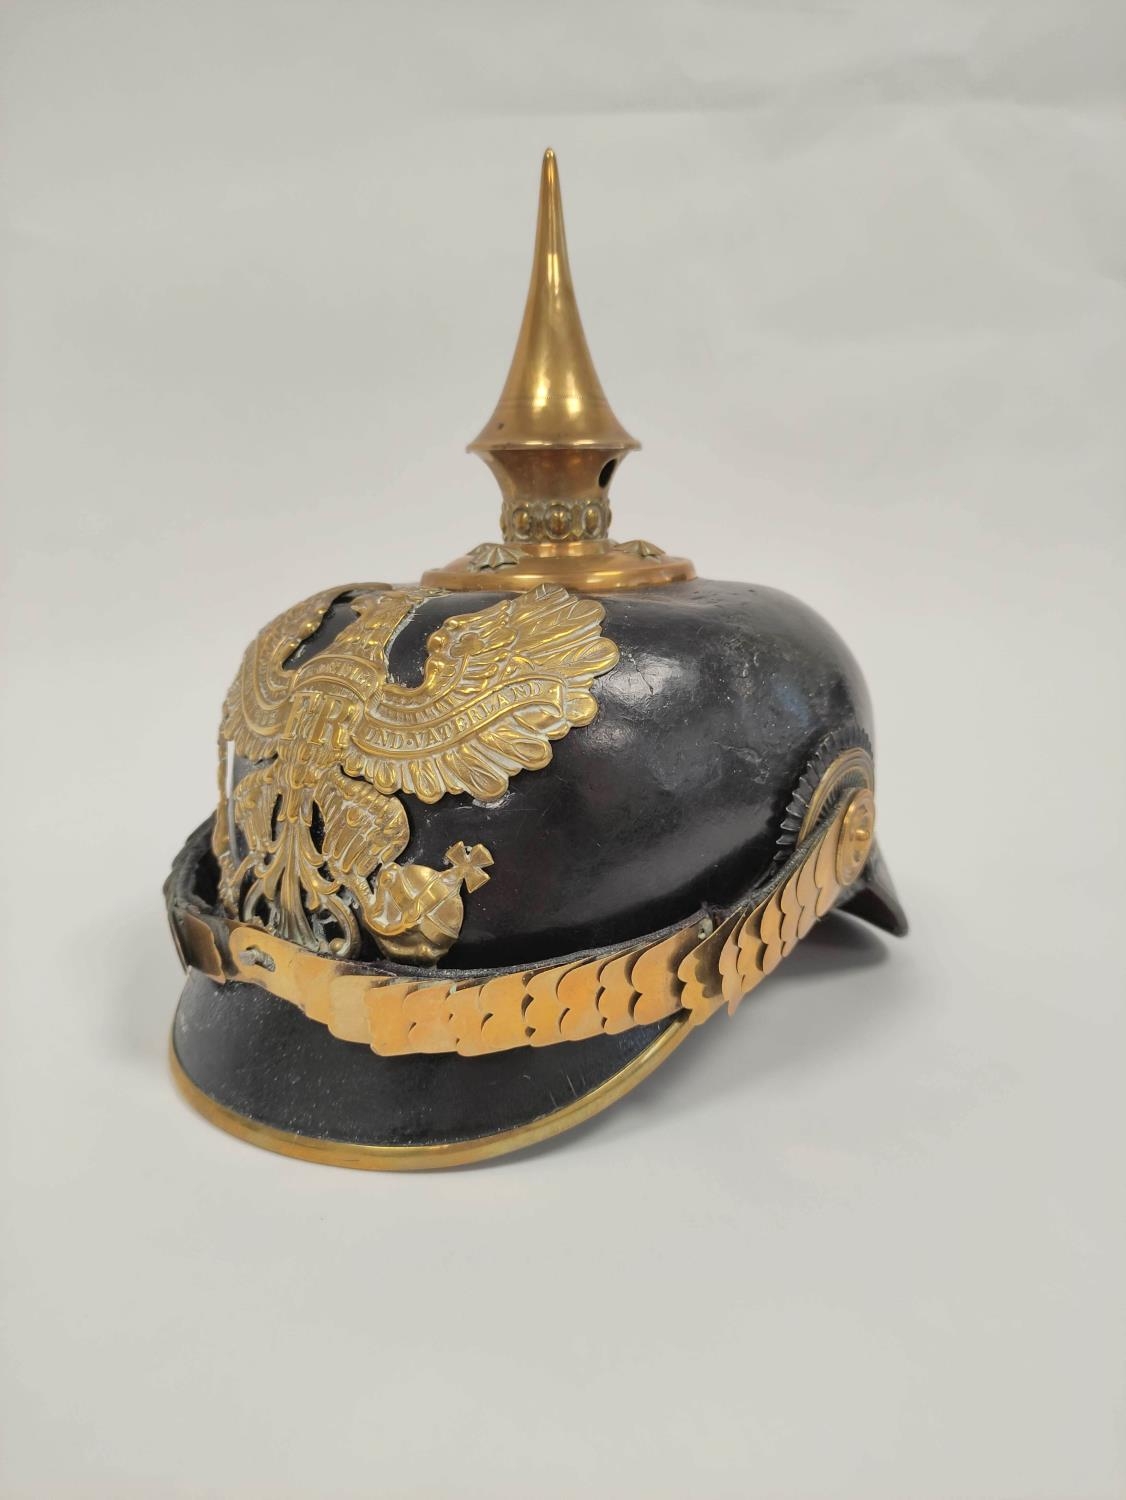 Imperial German Pickelhaube spiked officer's helmet model 1897. The helmet of black leather